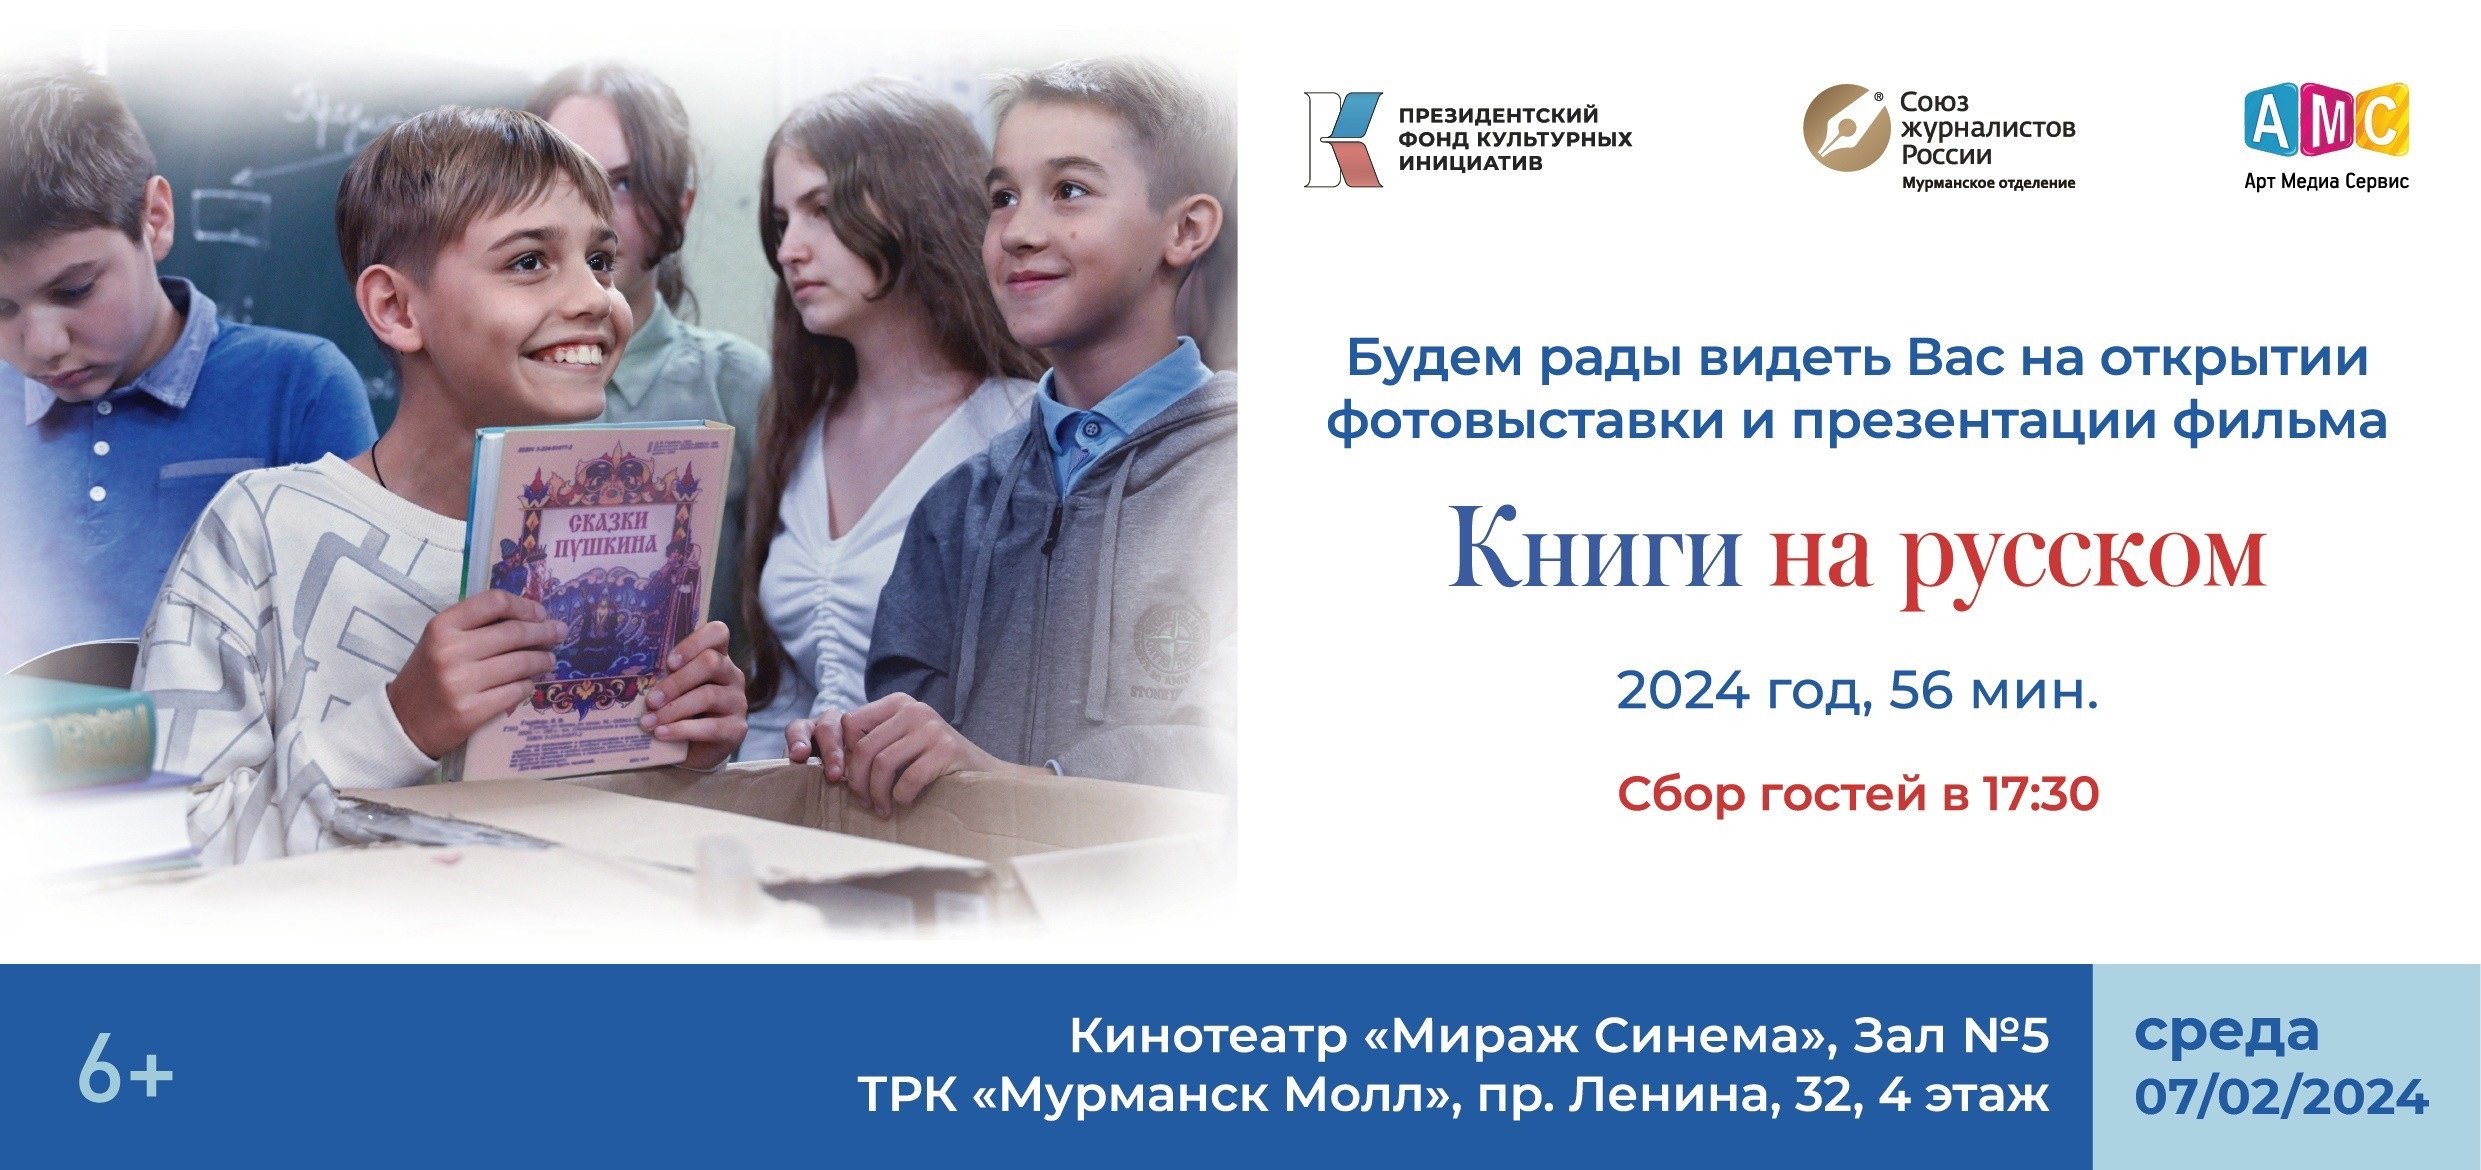 В «Мурманск Молл» состоится презентация фильма «Книги на русском»